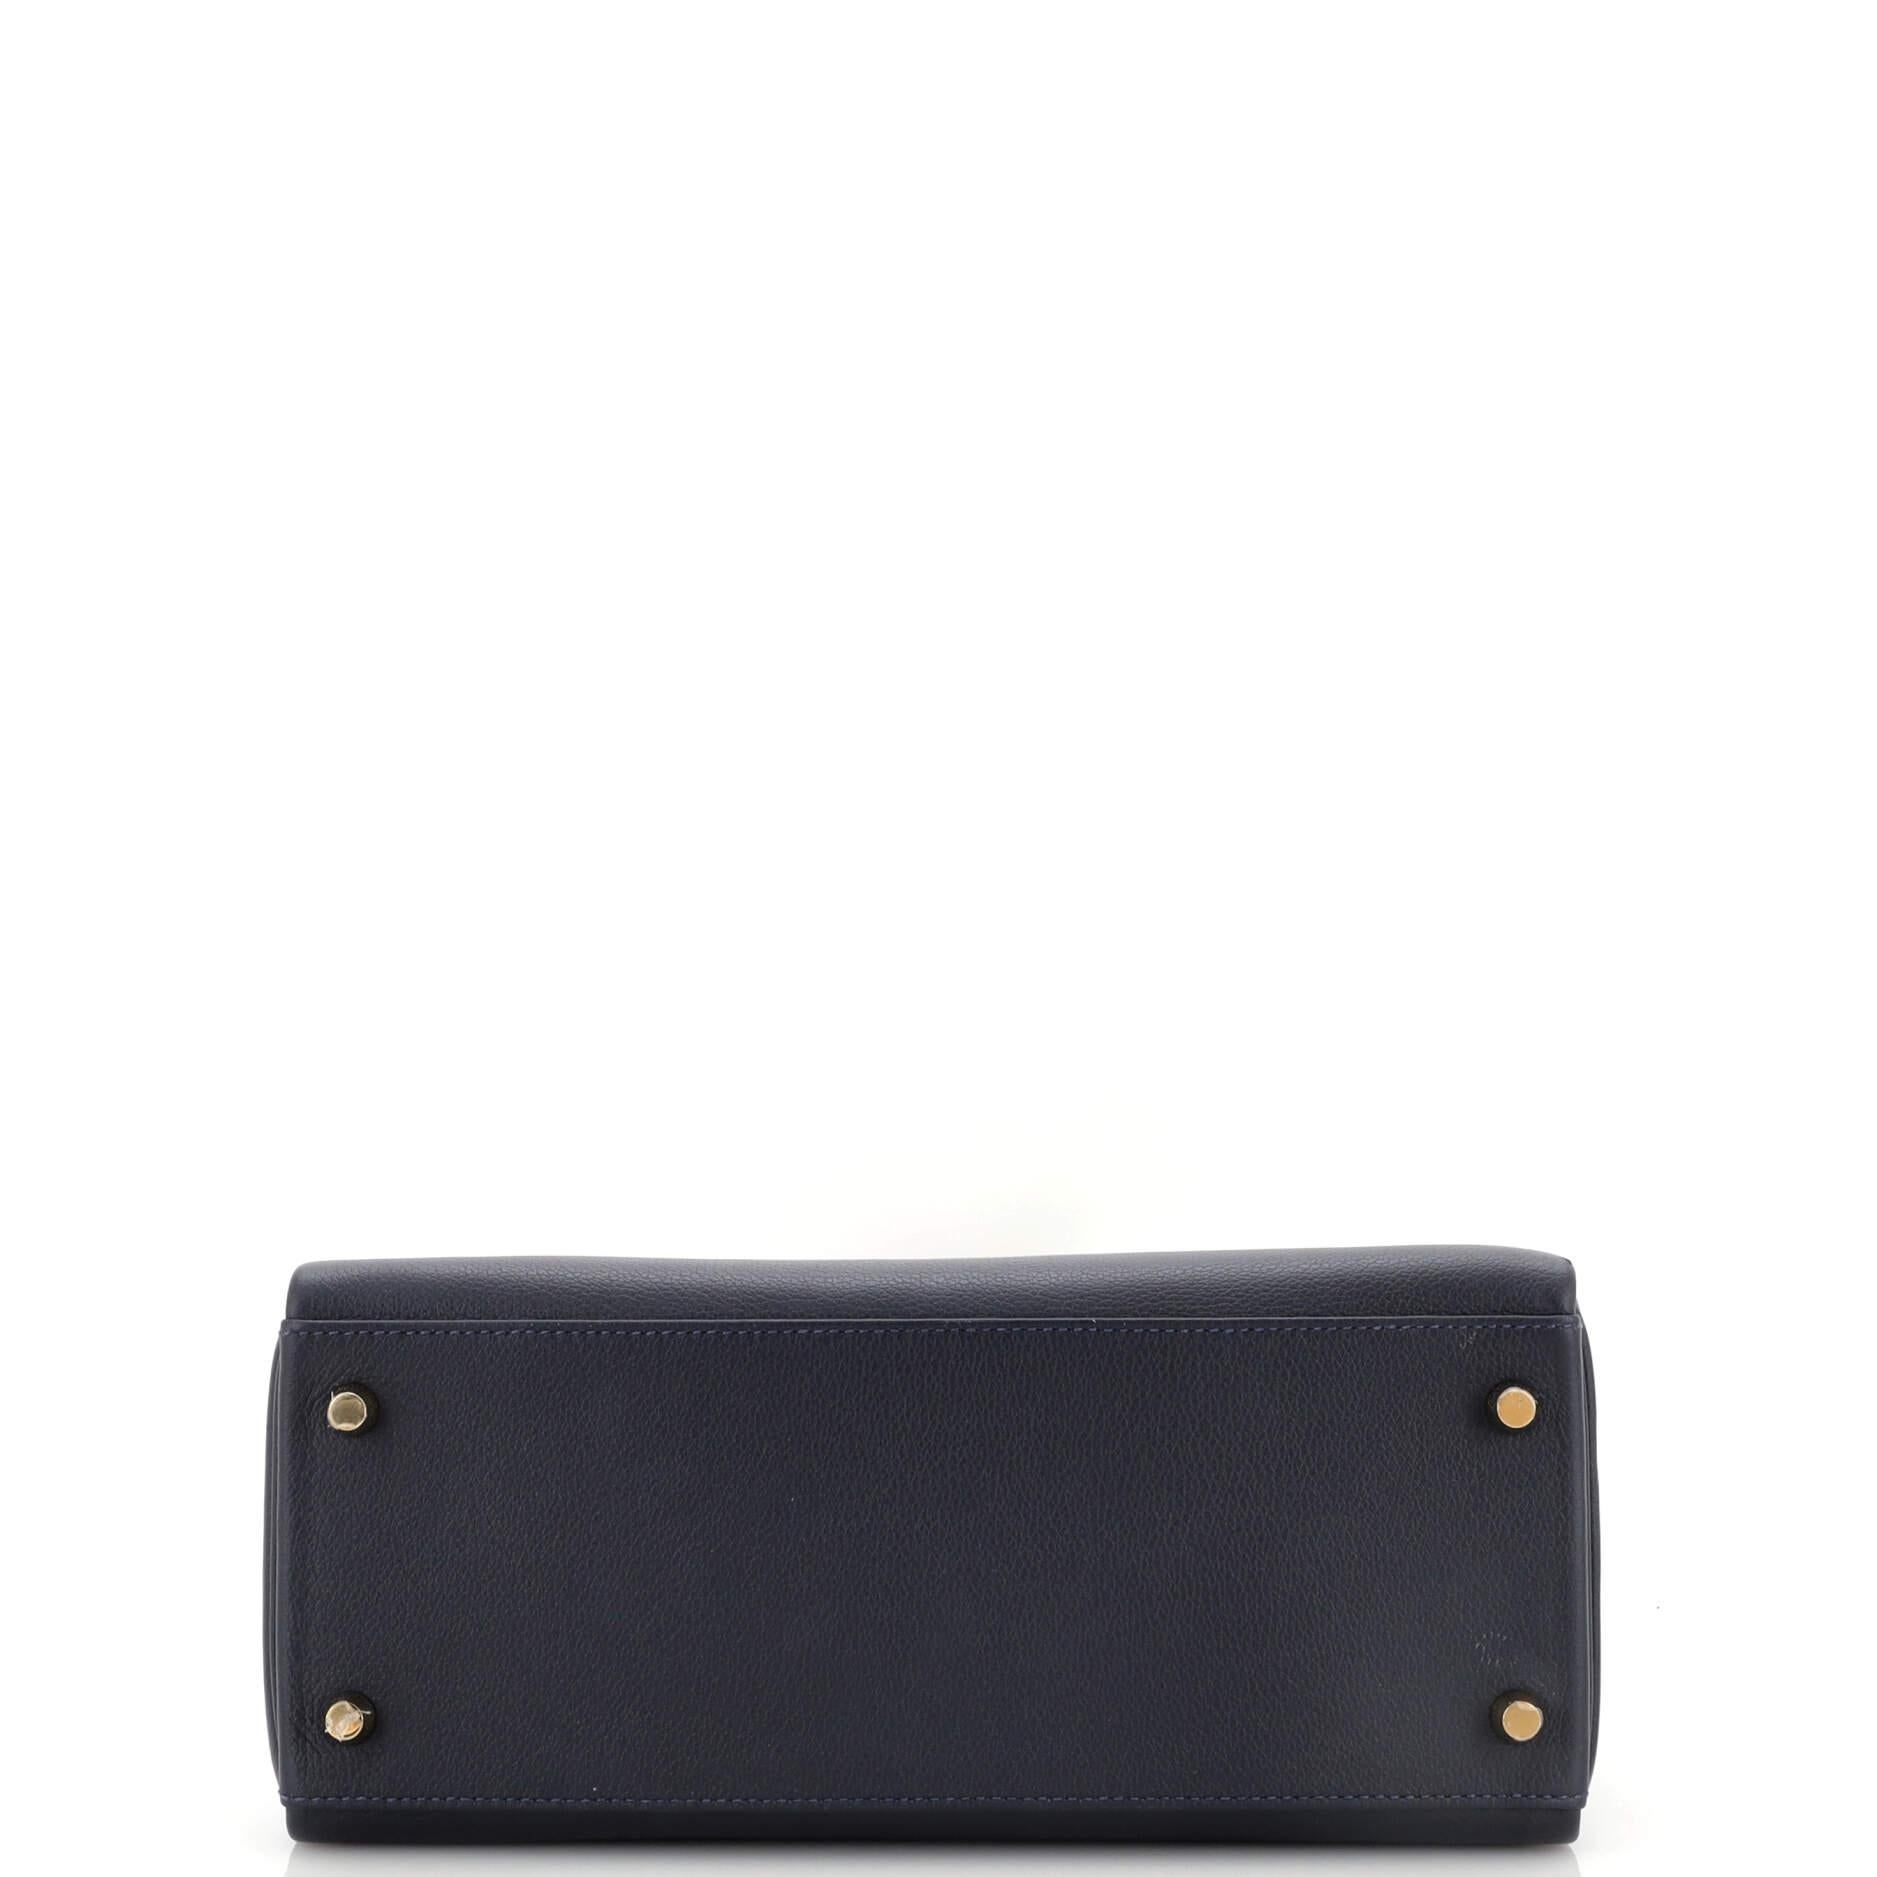 Hermes Kelly Handbag Bleu Nuit Evercolor with Gold Hardware 28 1